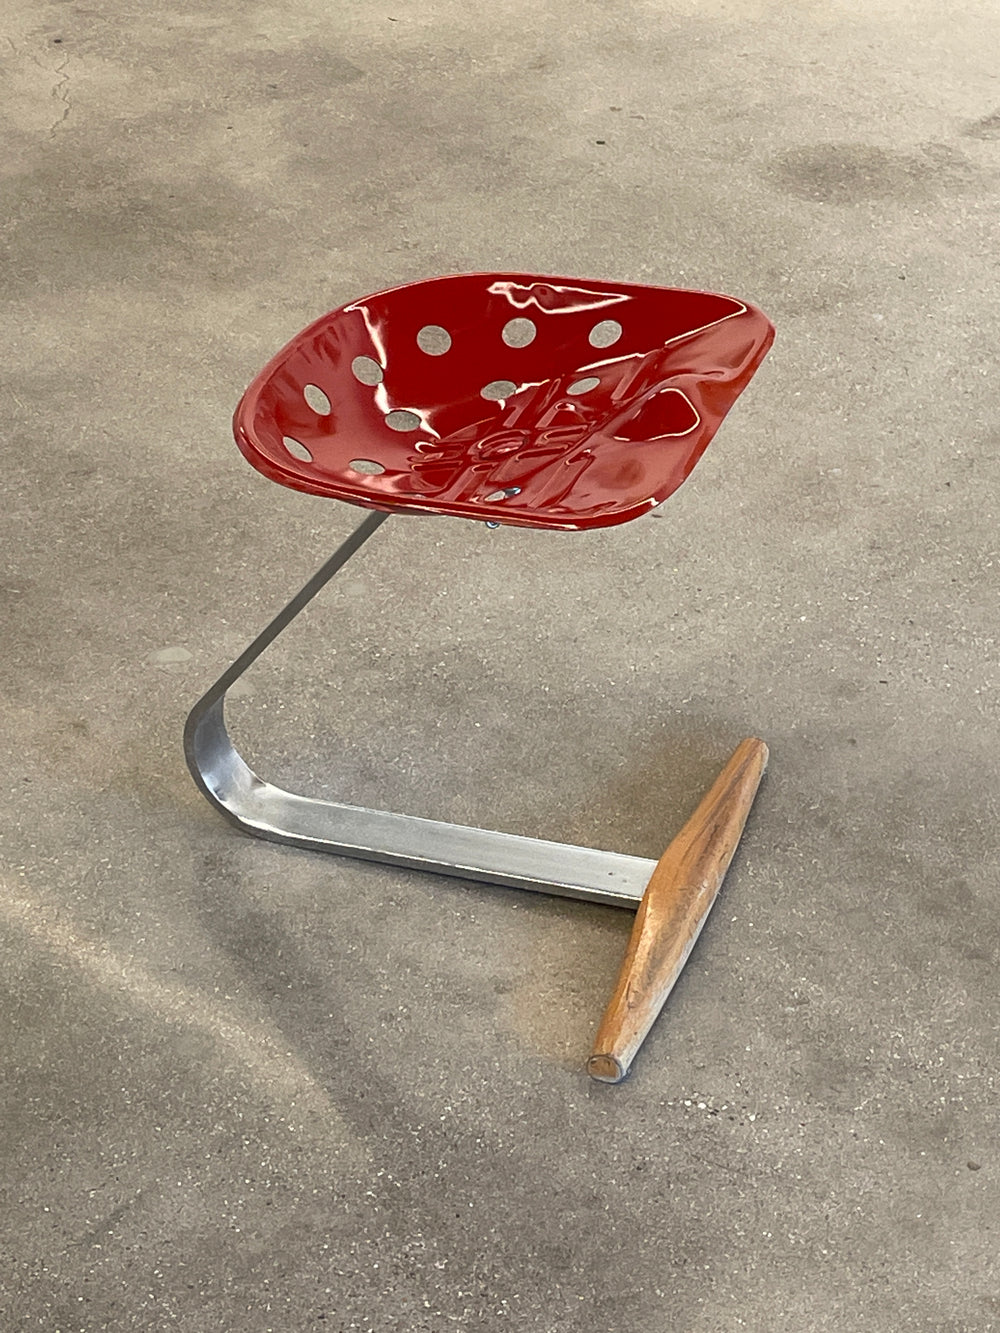 Achille and Pier Giacomo Castiglioni "Mezzadro" red stool for Zanotta Italy, 1957 / c. 1970